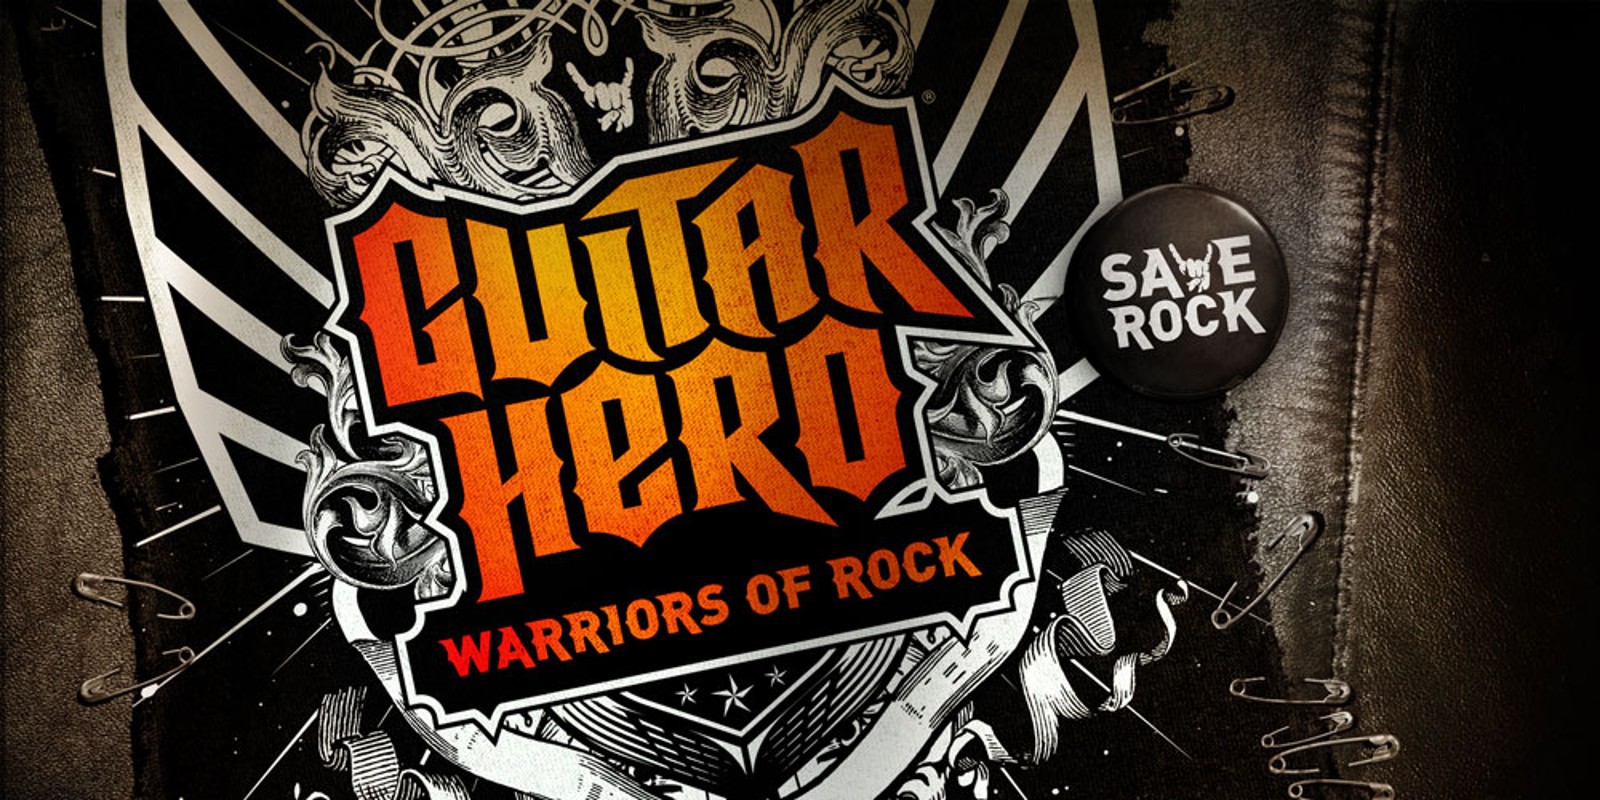 Guitar Hero®: Warriors of Rock